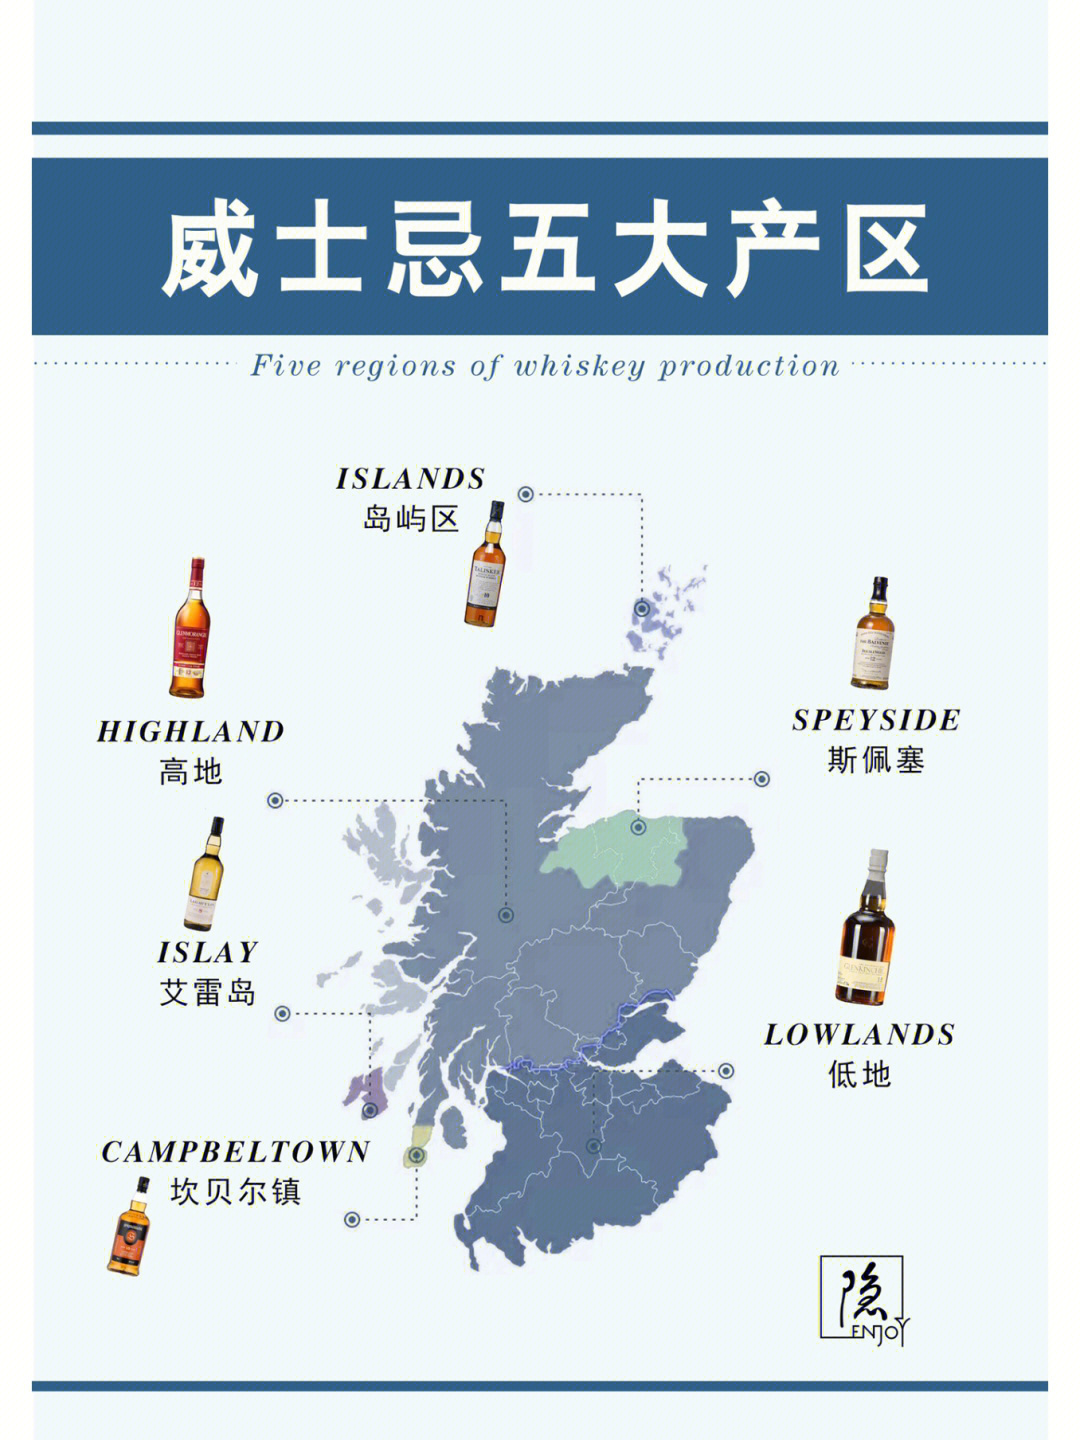 95世界威士忌有五大产区:苏格兰,爱尔兰,美国,日本,加拿大